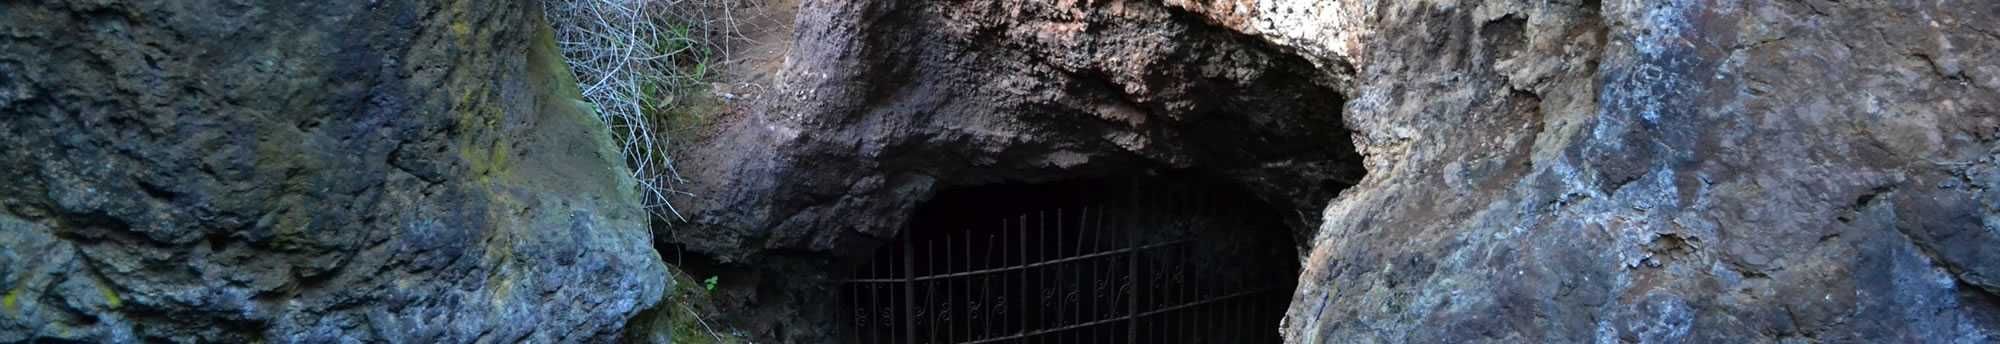 Cueva del Hierro de Cuenca